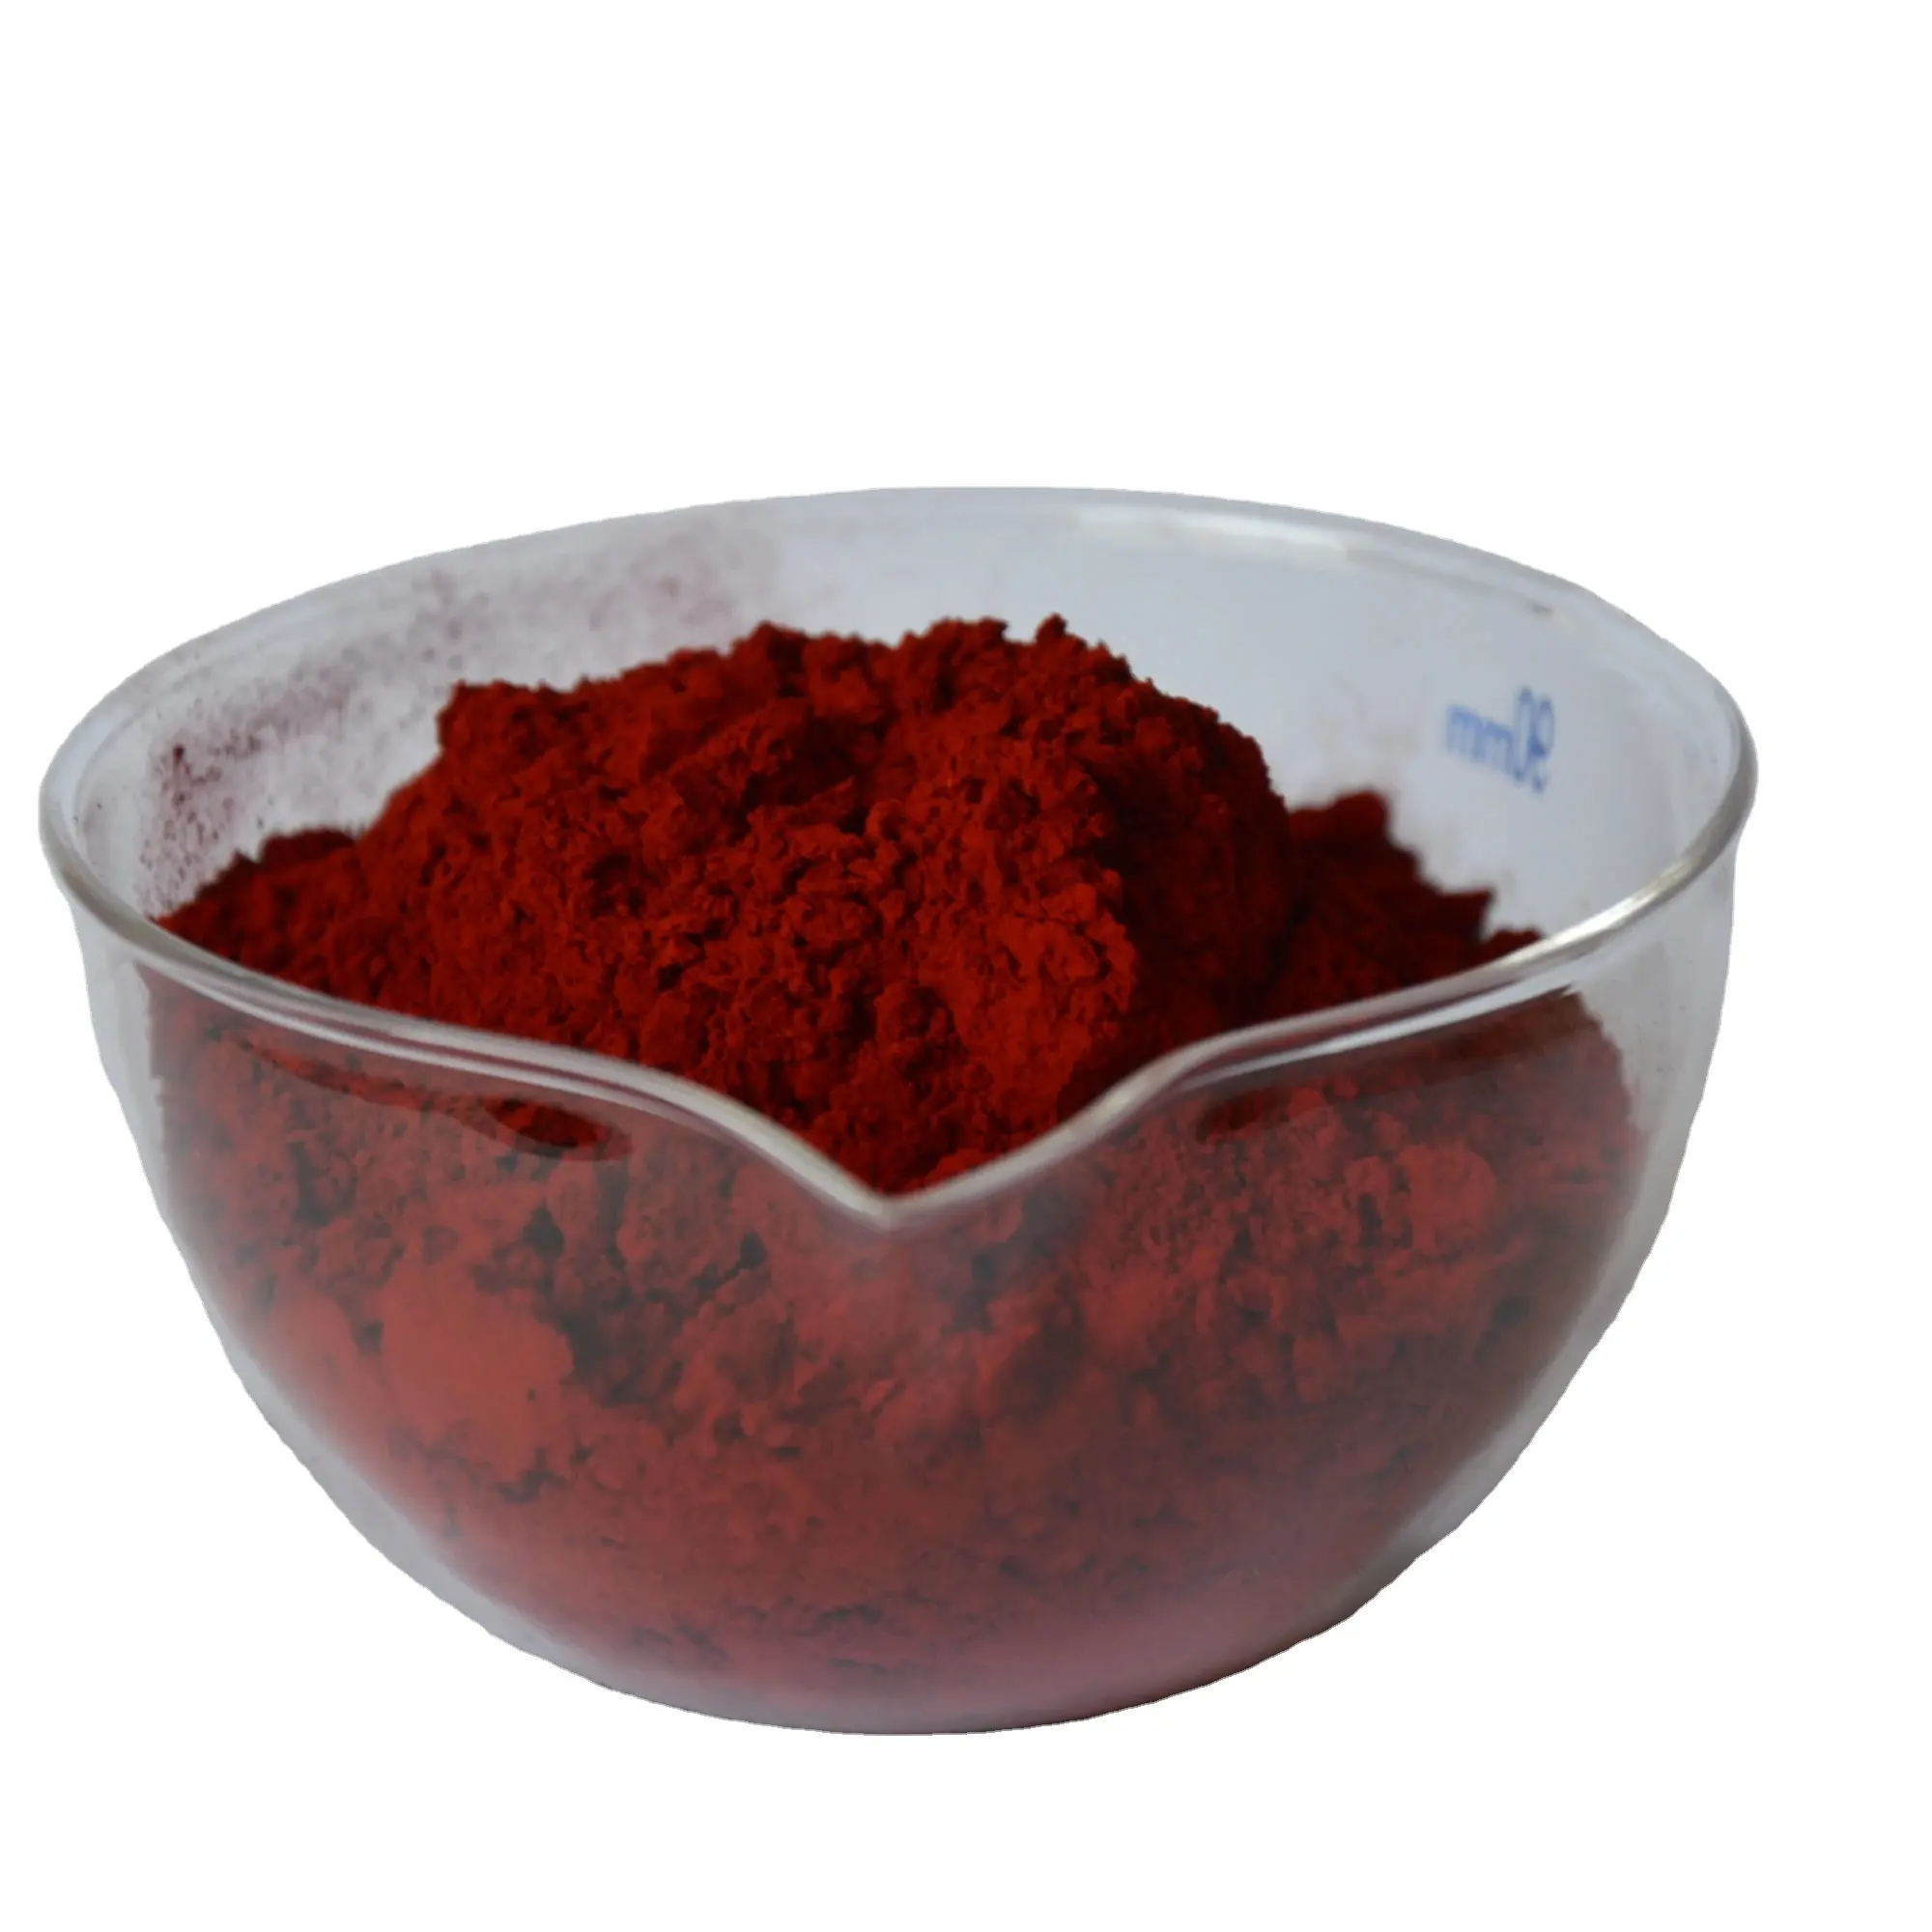 Tinte para madera CI 16255 rojo 121 rojo carmín rojo ácido R 2R BR rojo ácido 18 para lana seda papel de nailon cuero plástico madera cosméticos tinta